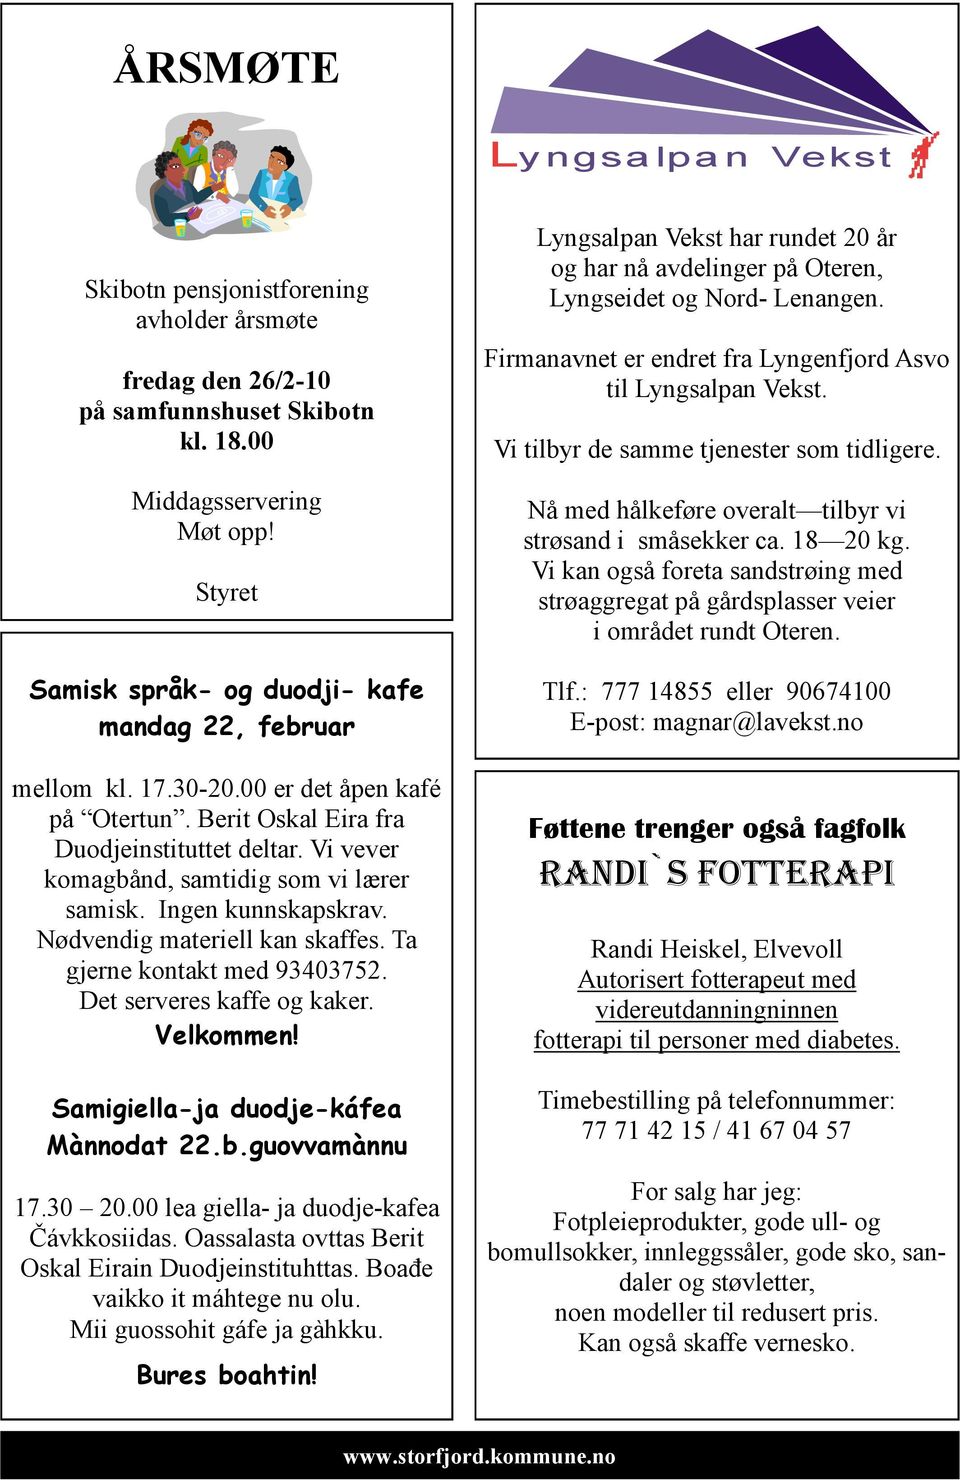 Vi vever komagbånd, samtidig som vi lærer samisk. Ingen kunnskapskrav. Nødvendig materiell kan skaffes. Ta gjerne kontakt med 93403752. Det serveres kaffe og kaker. Velkommen!